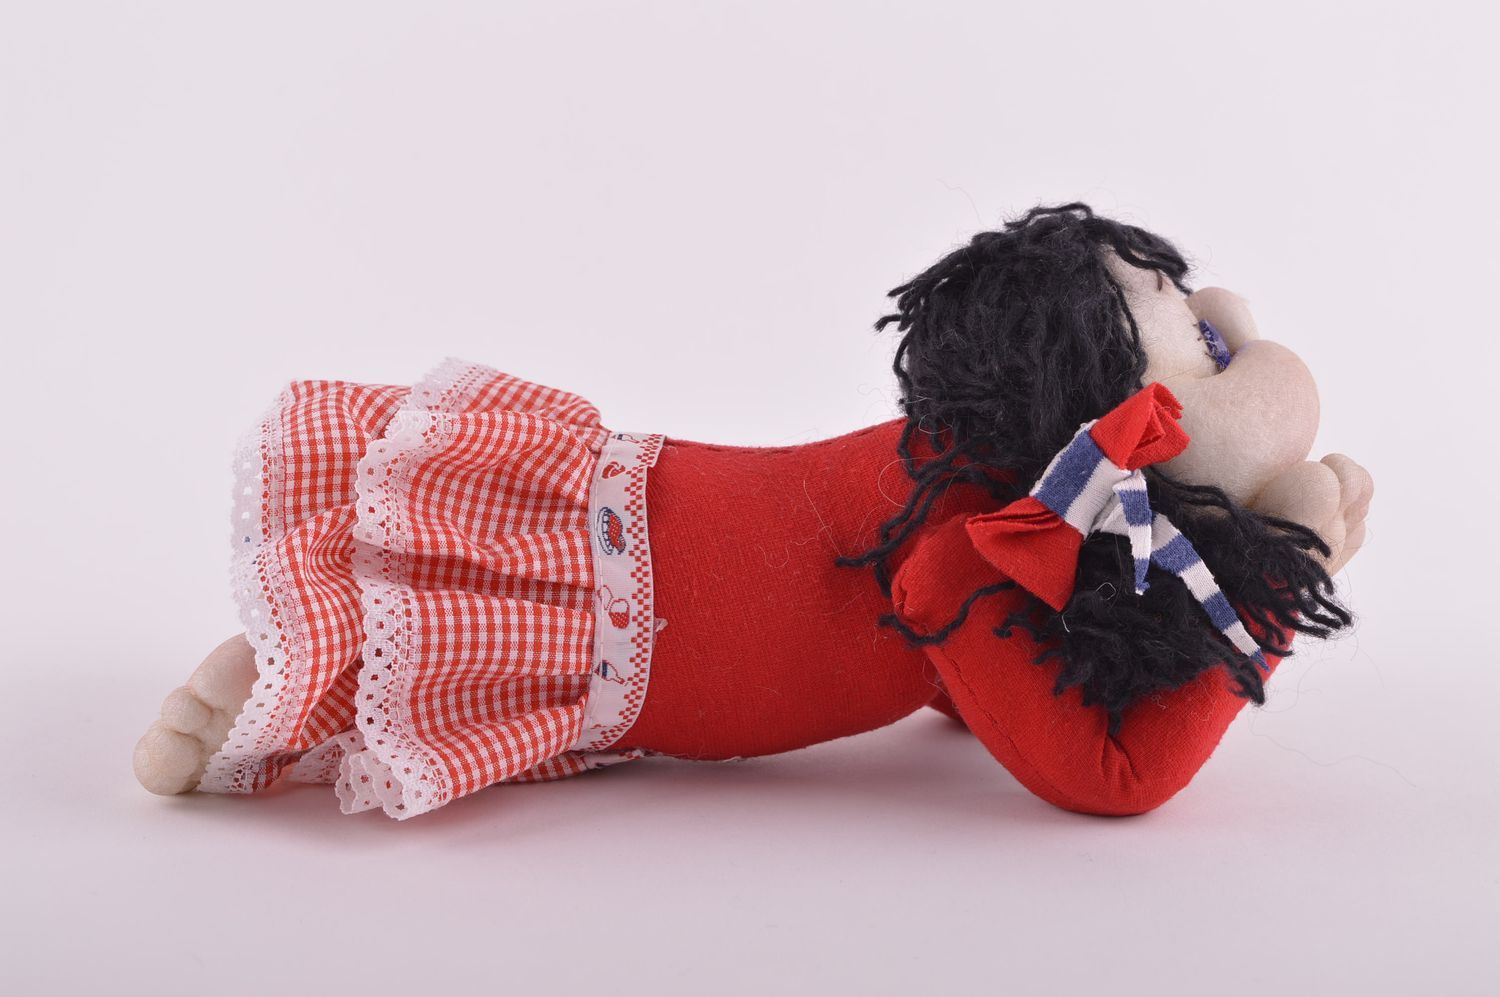 Puppe handgemacht Stoff Spielzeug Designer Puppe interessant Deko Puppe schön foto 4